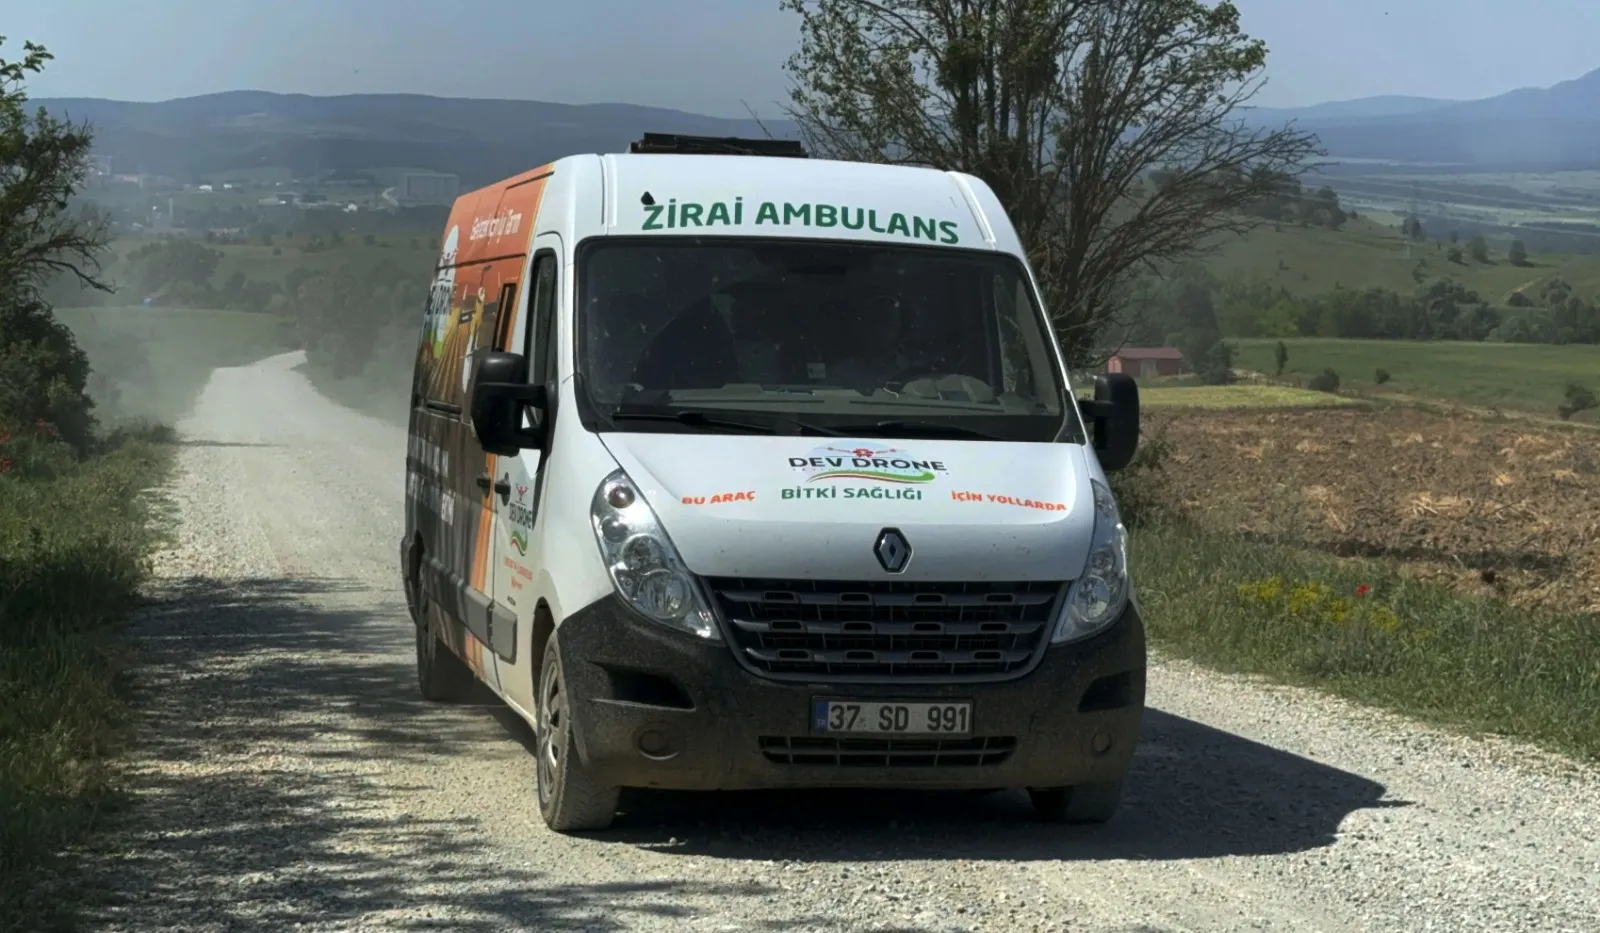 Kastamonu'da 'Zirai Ambulans' Iş Başında Mahsulleri Kurtarıyor